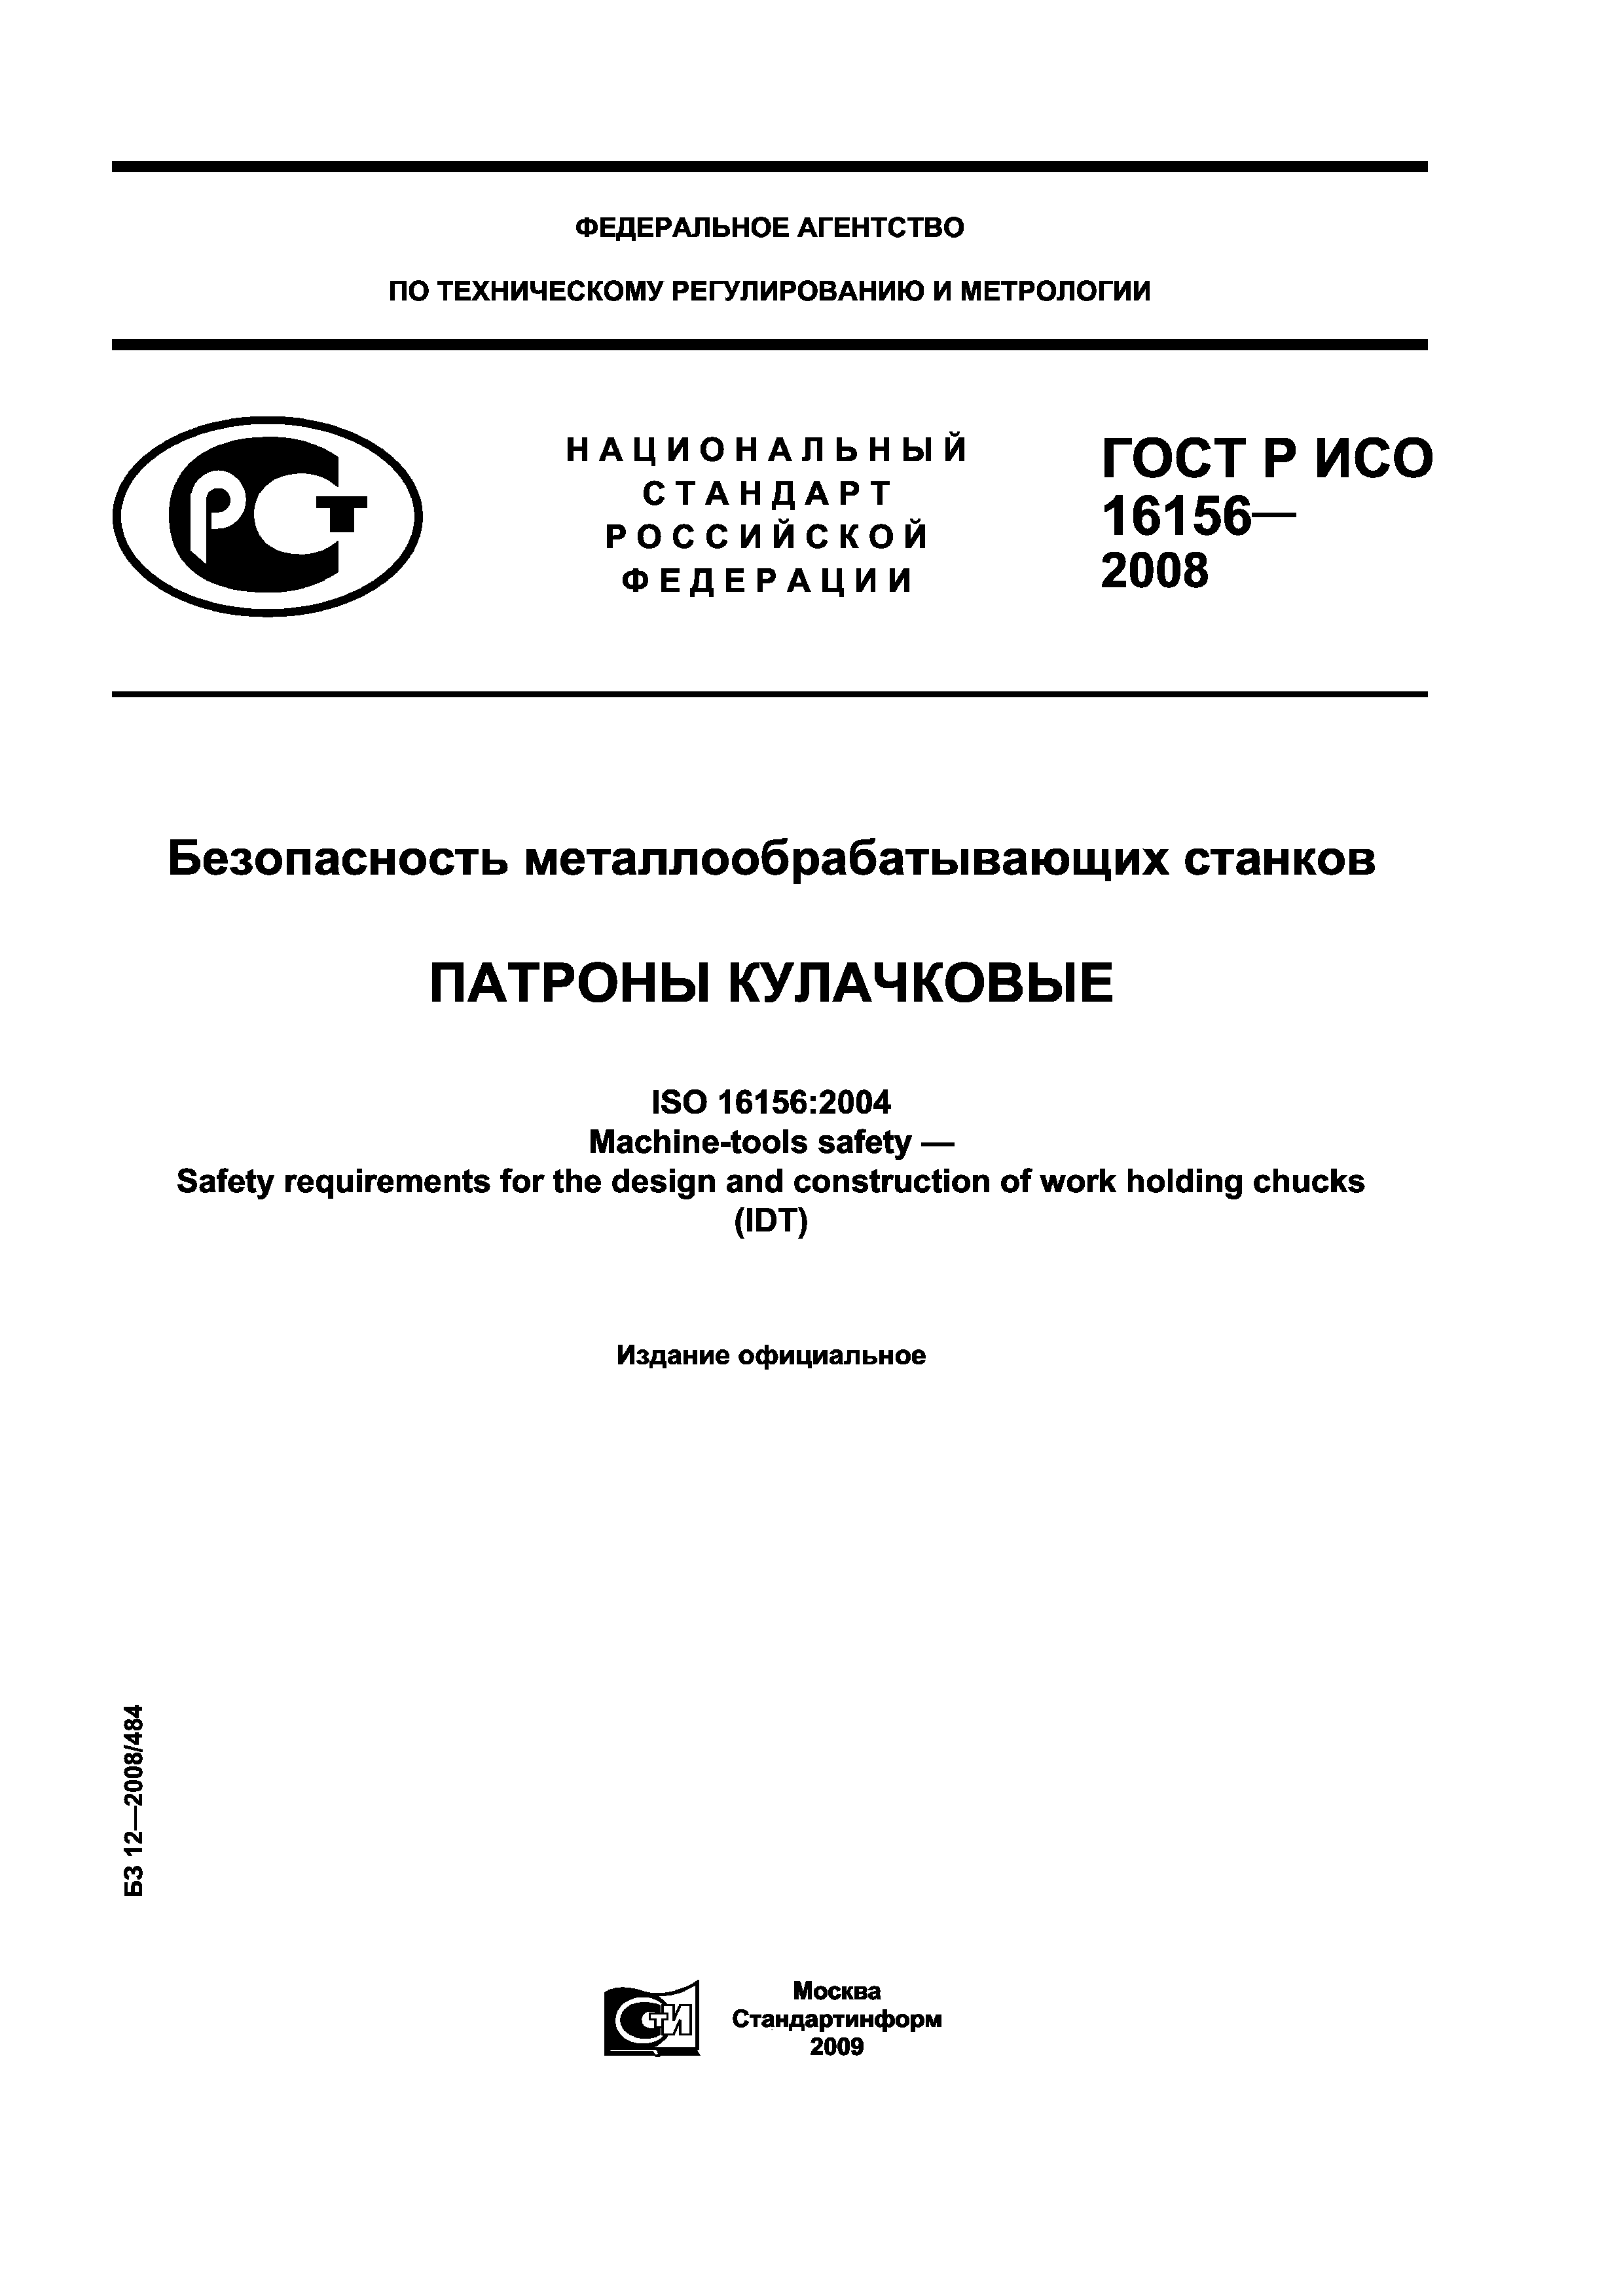 ГОСТ Р ИСО 16156-2008